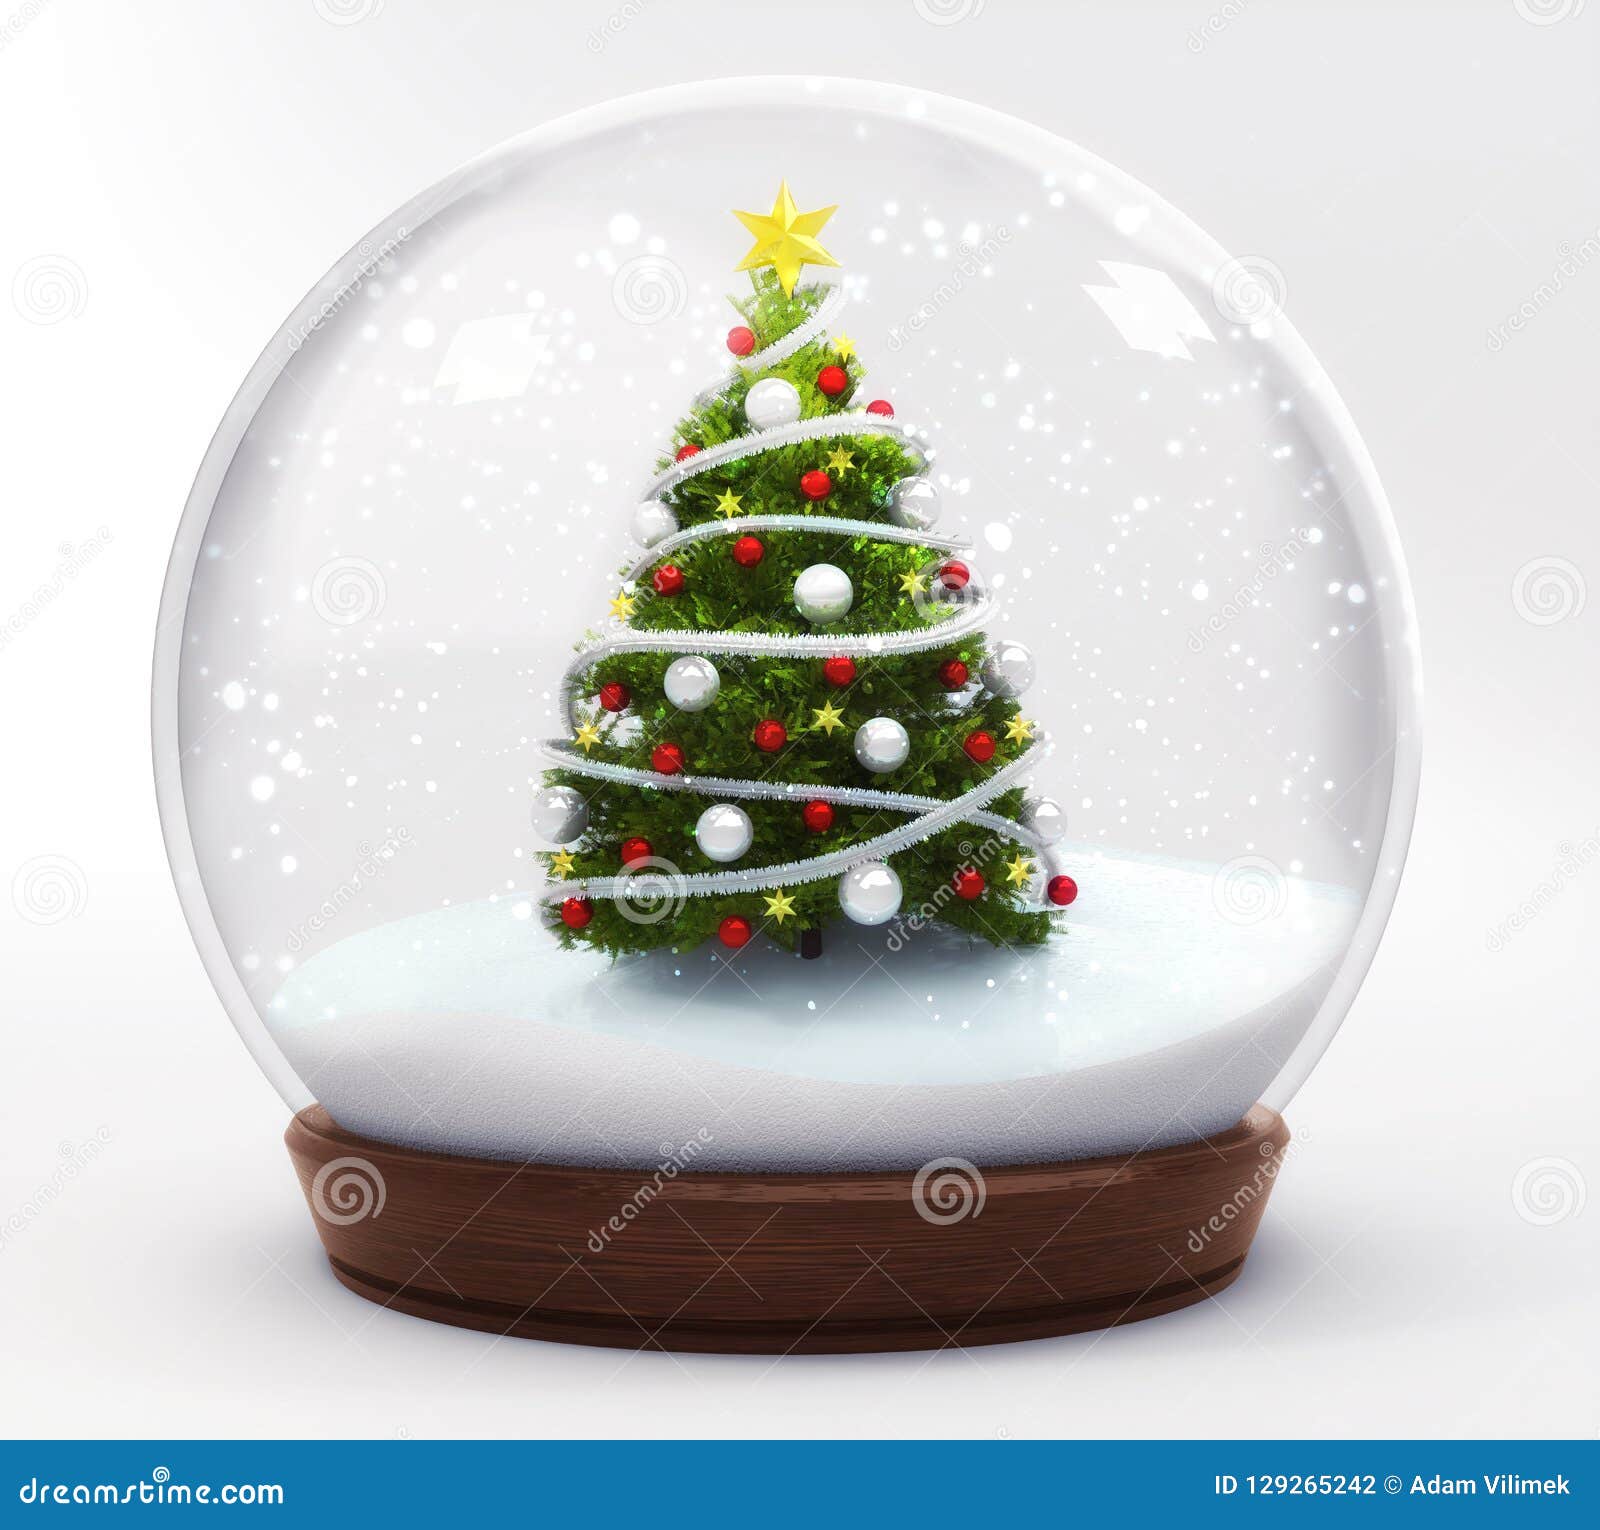 Spieluhrenwelt 48083 Figura decorativa de bola de nieve con árboles de Navidad 